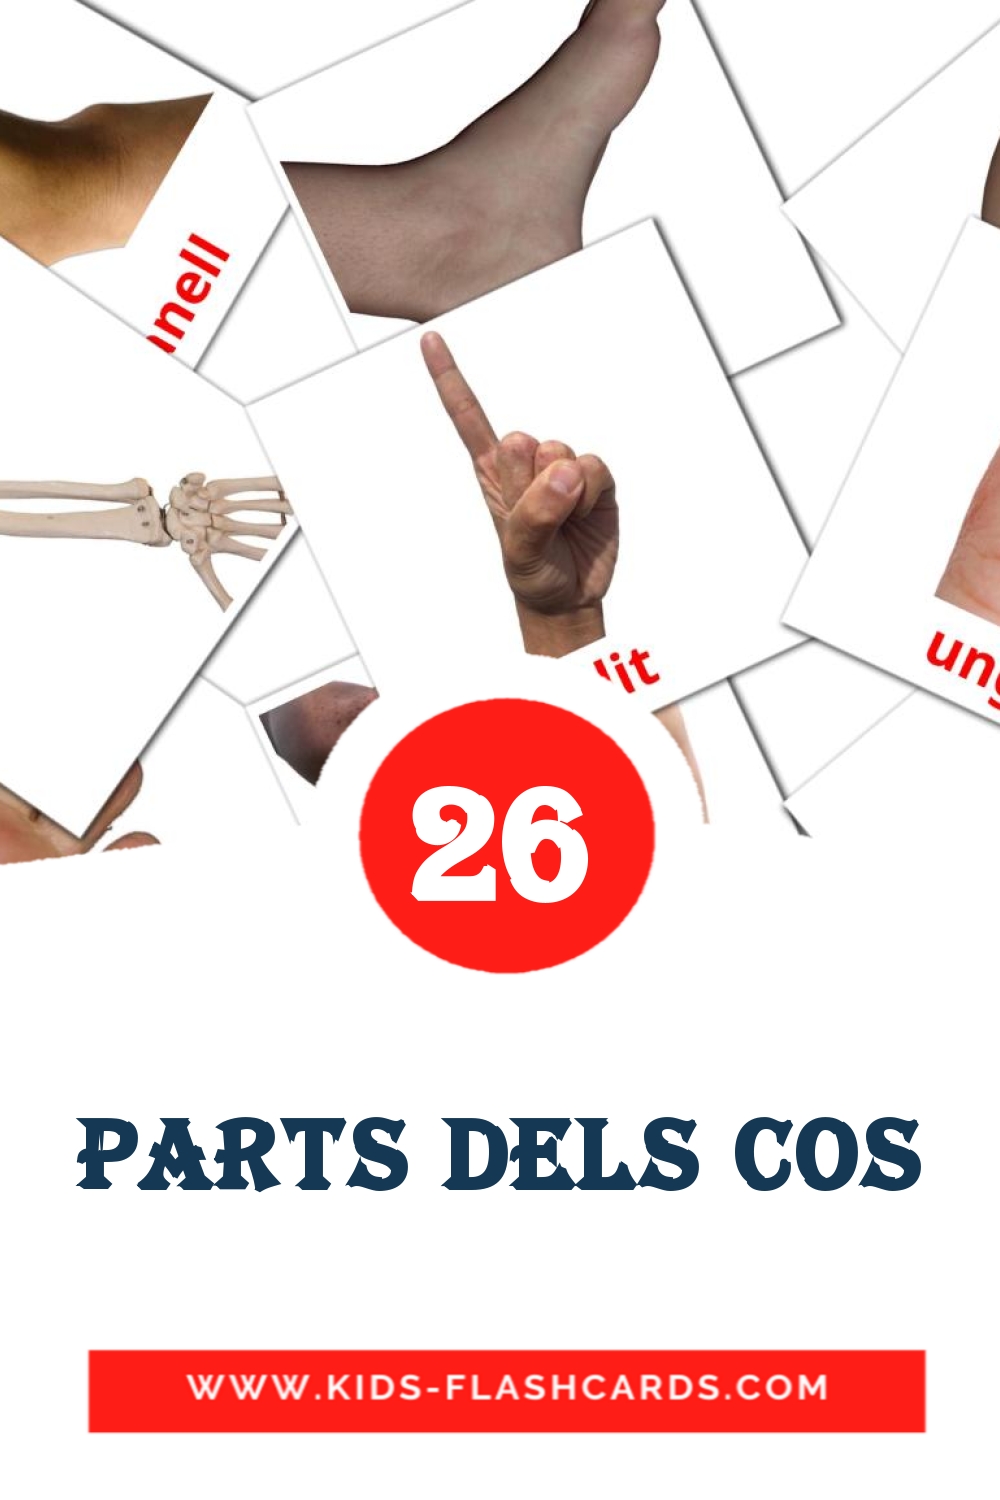 Parts dels cos на каталонском для Детского Сада (26 карточек)